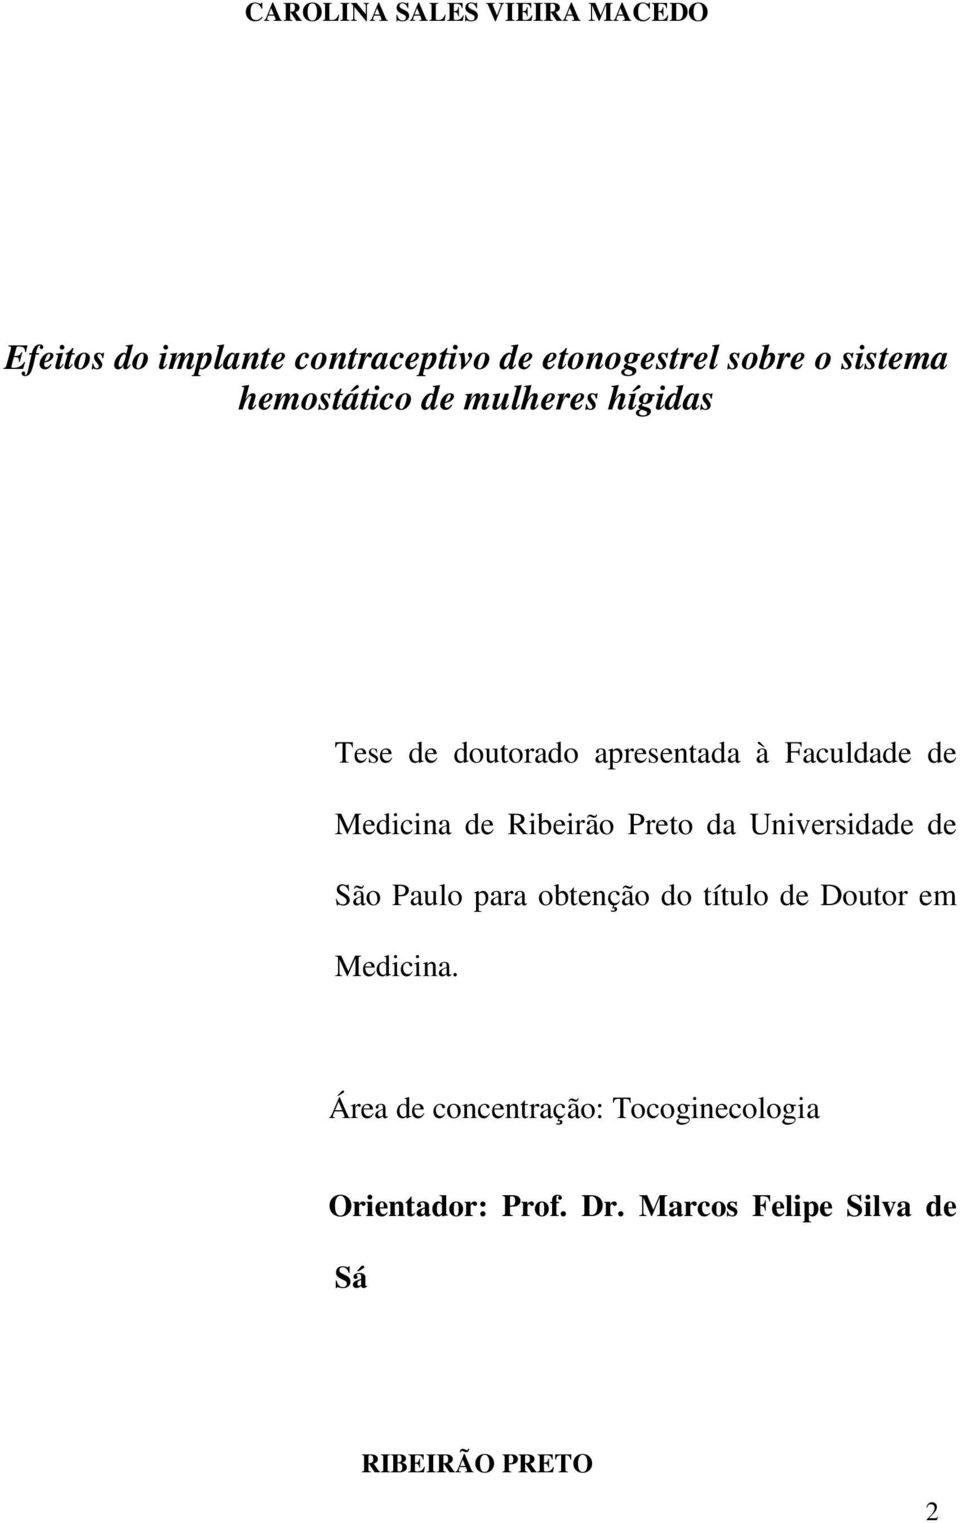 Ribeirão Preto da Universidade de São Paulo para obtenção do título de Doutor em Medicina.